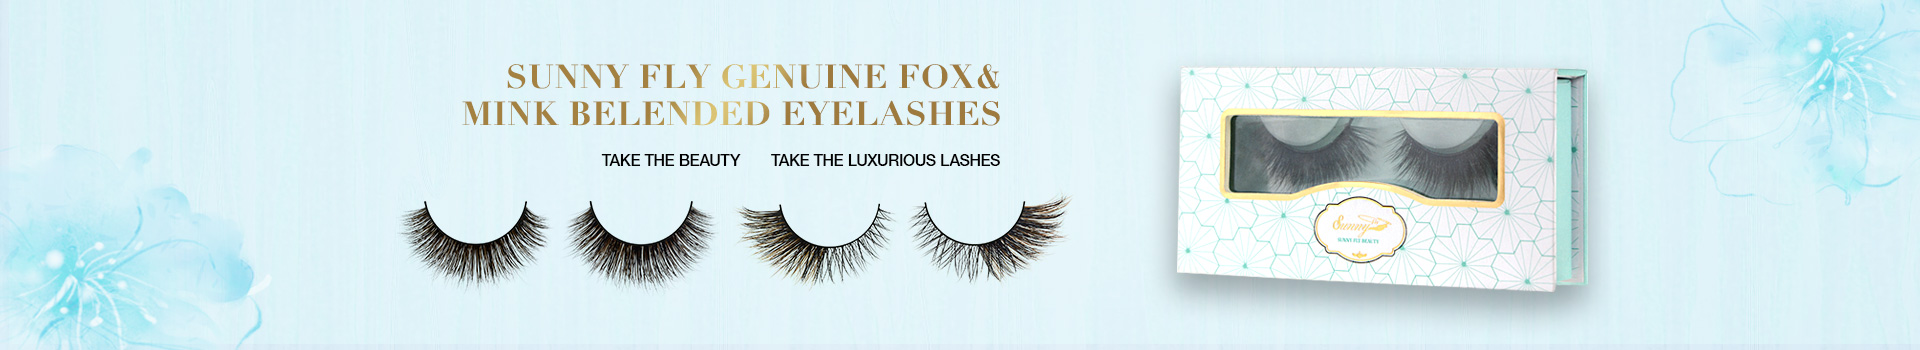 Fox & Mink Fur Blended Eyelashes FMB04